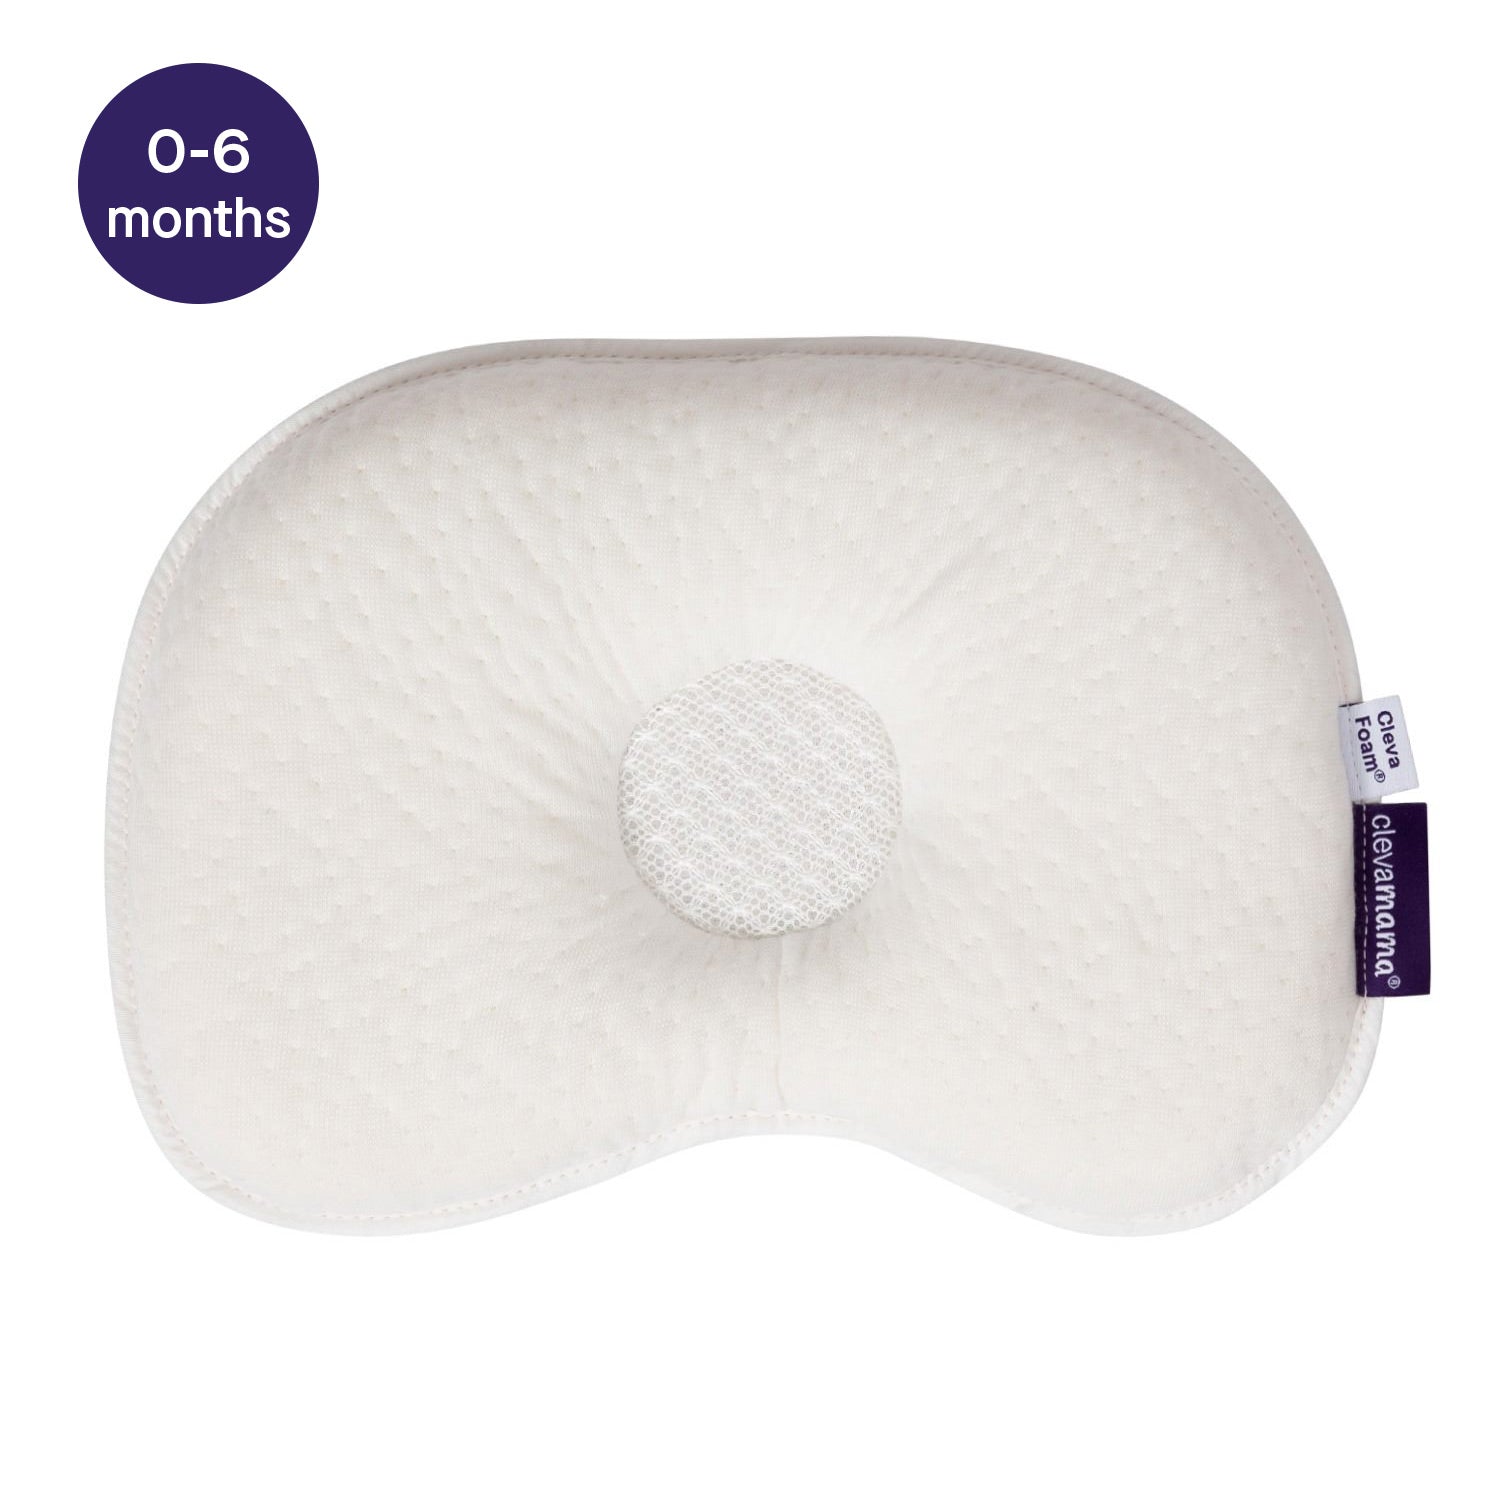 ClevaFoam Infant Pillow